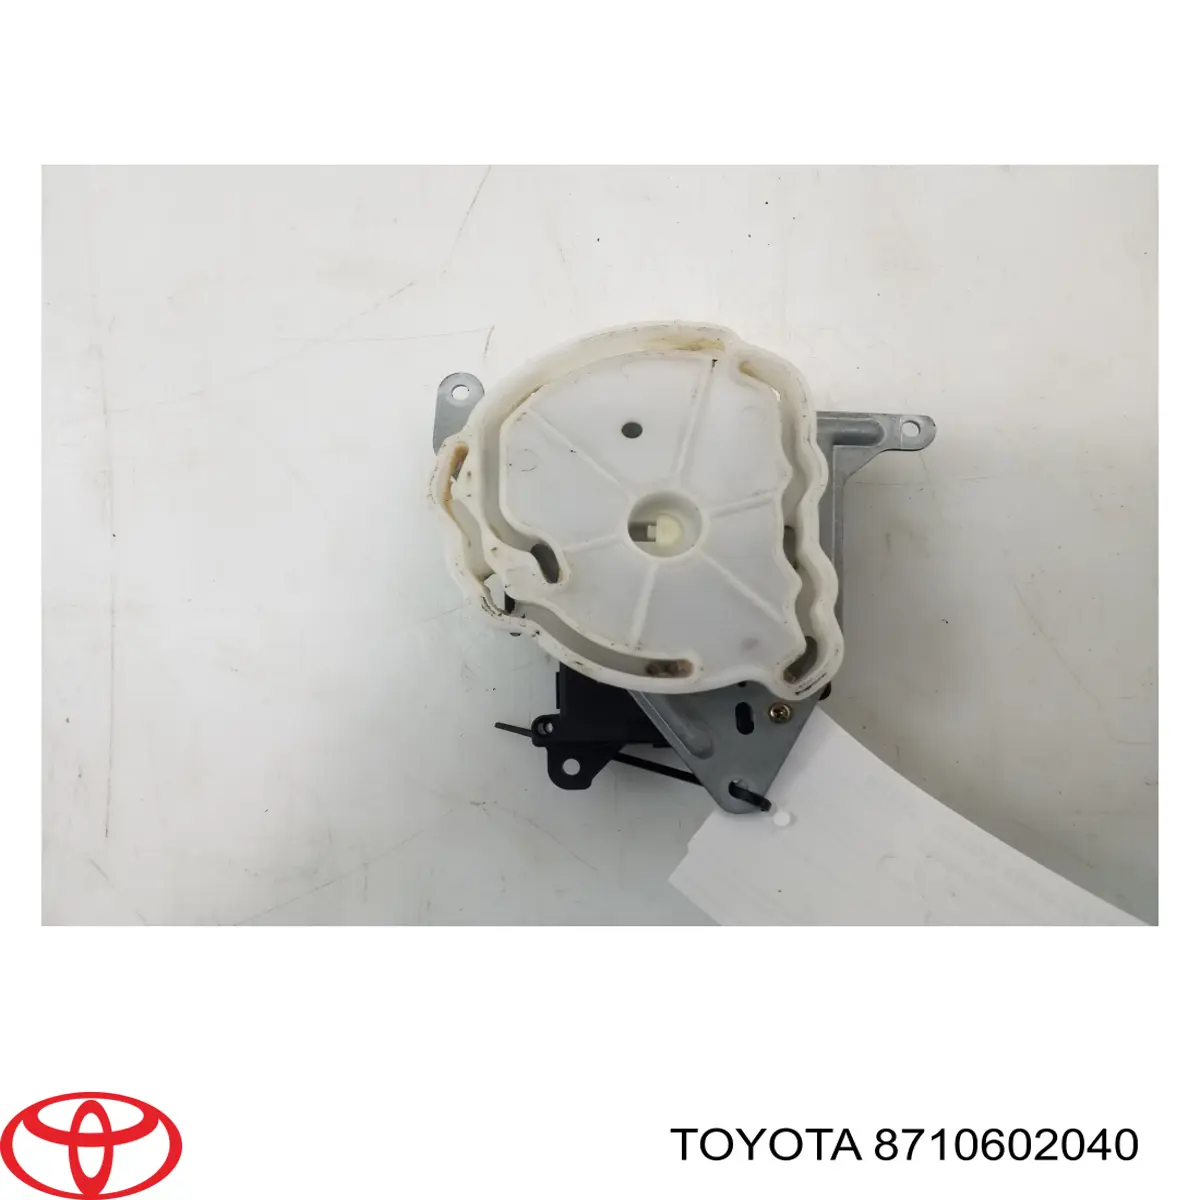 Привод заслонки печки на Toyota Avensis T22